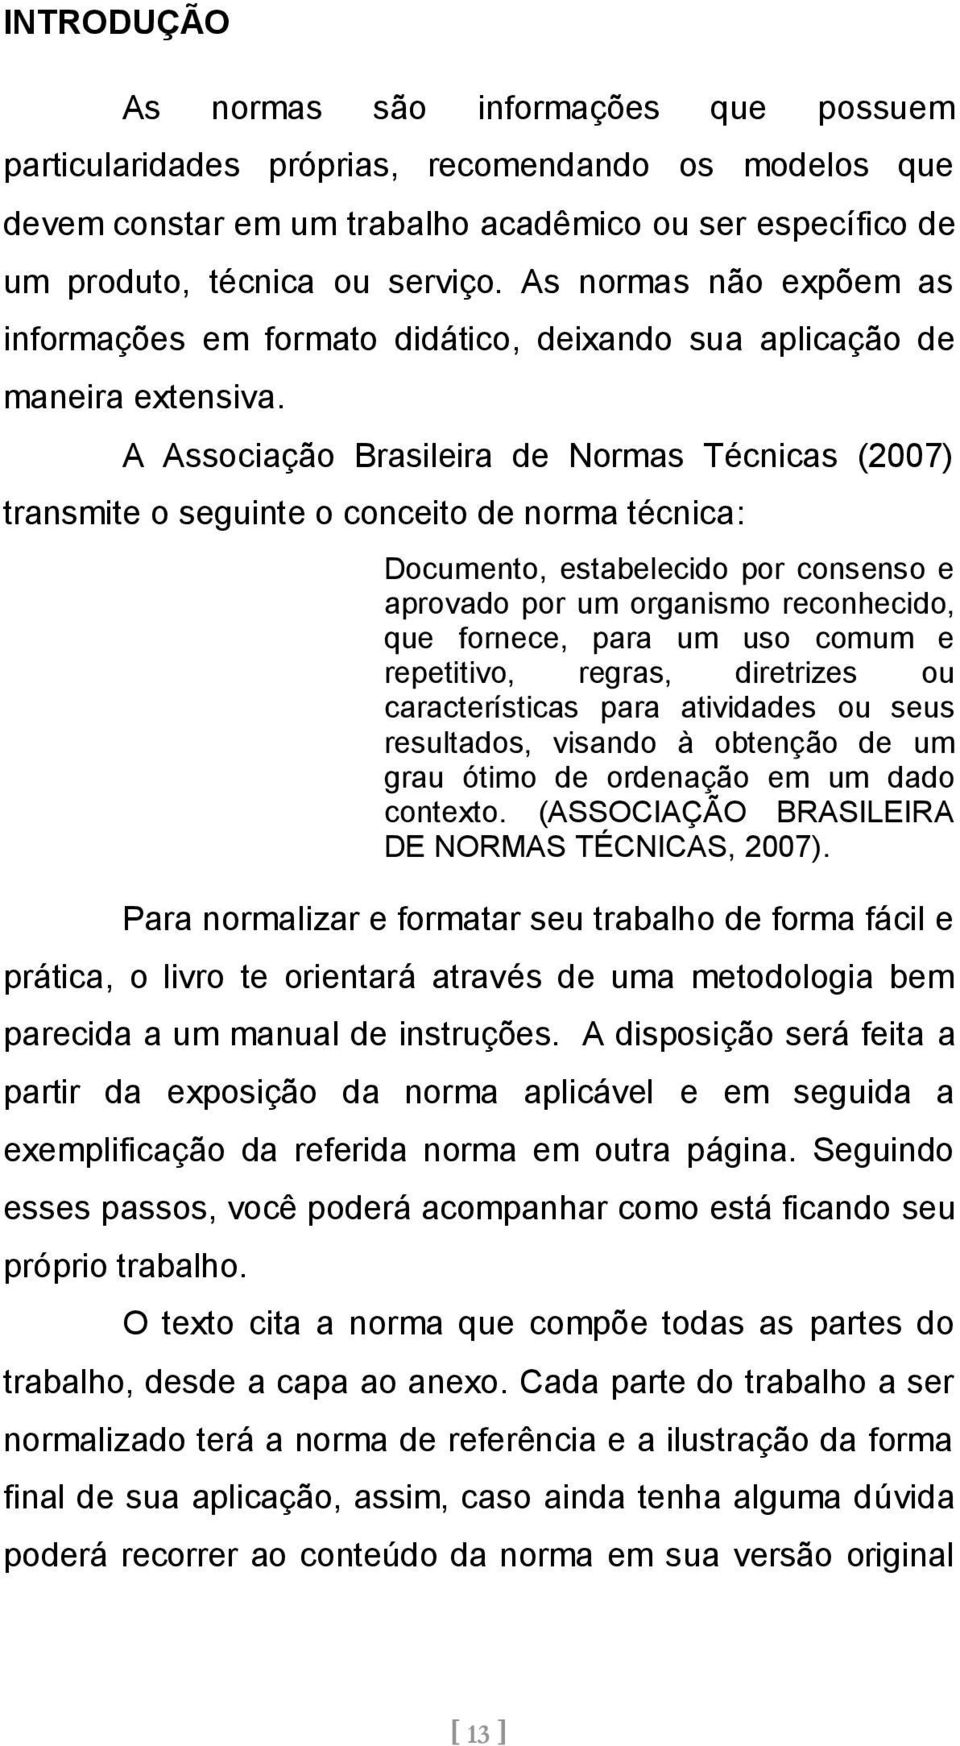 A Associação Brasileira de Normas Técnicas (2007) transmite o seguinte o conceito de norma técnica: Documento, estabelecido por consenso e aprovado por um organismo reconhecido, que fornece, para um